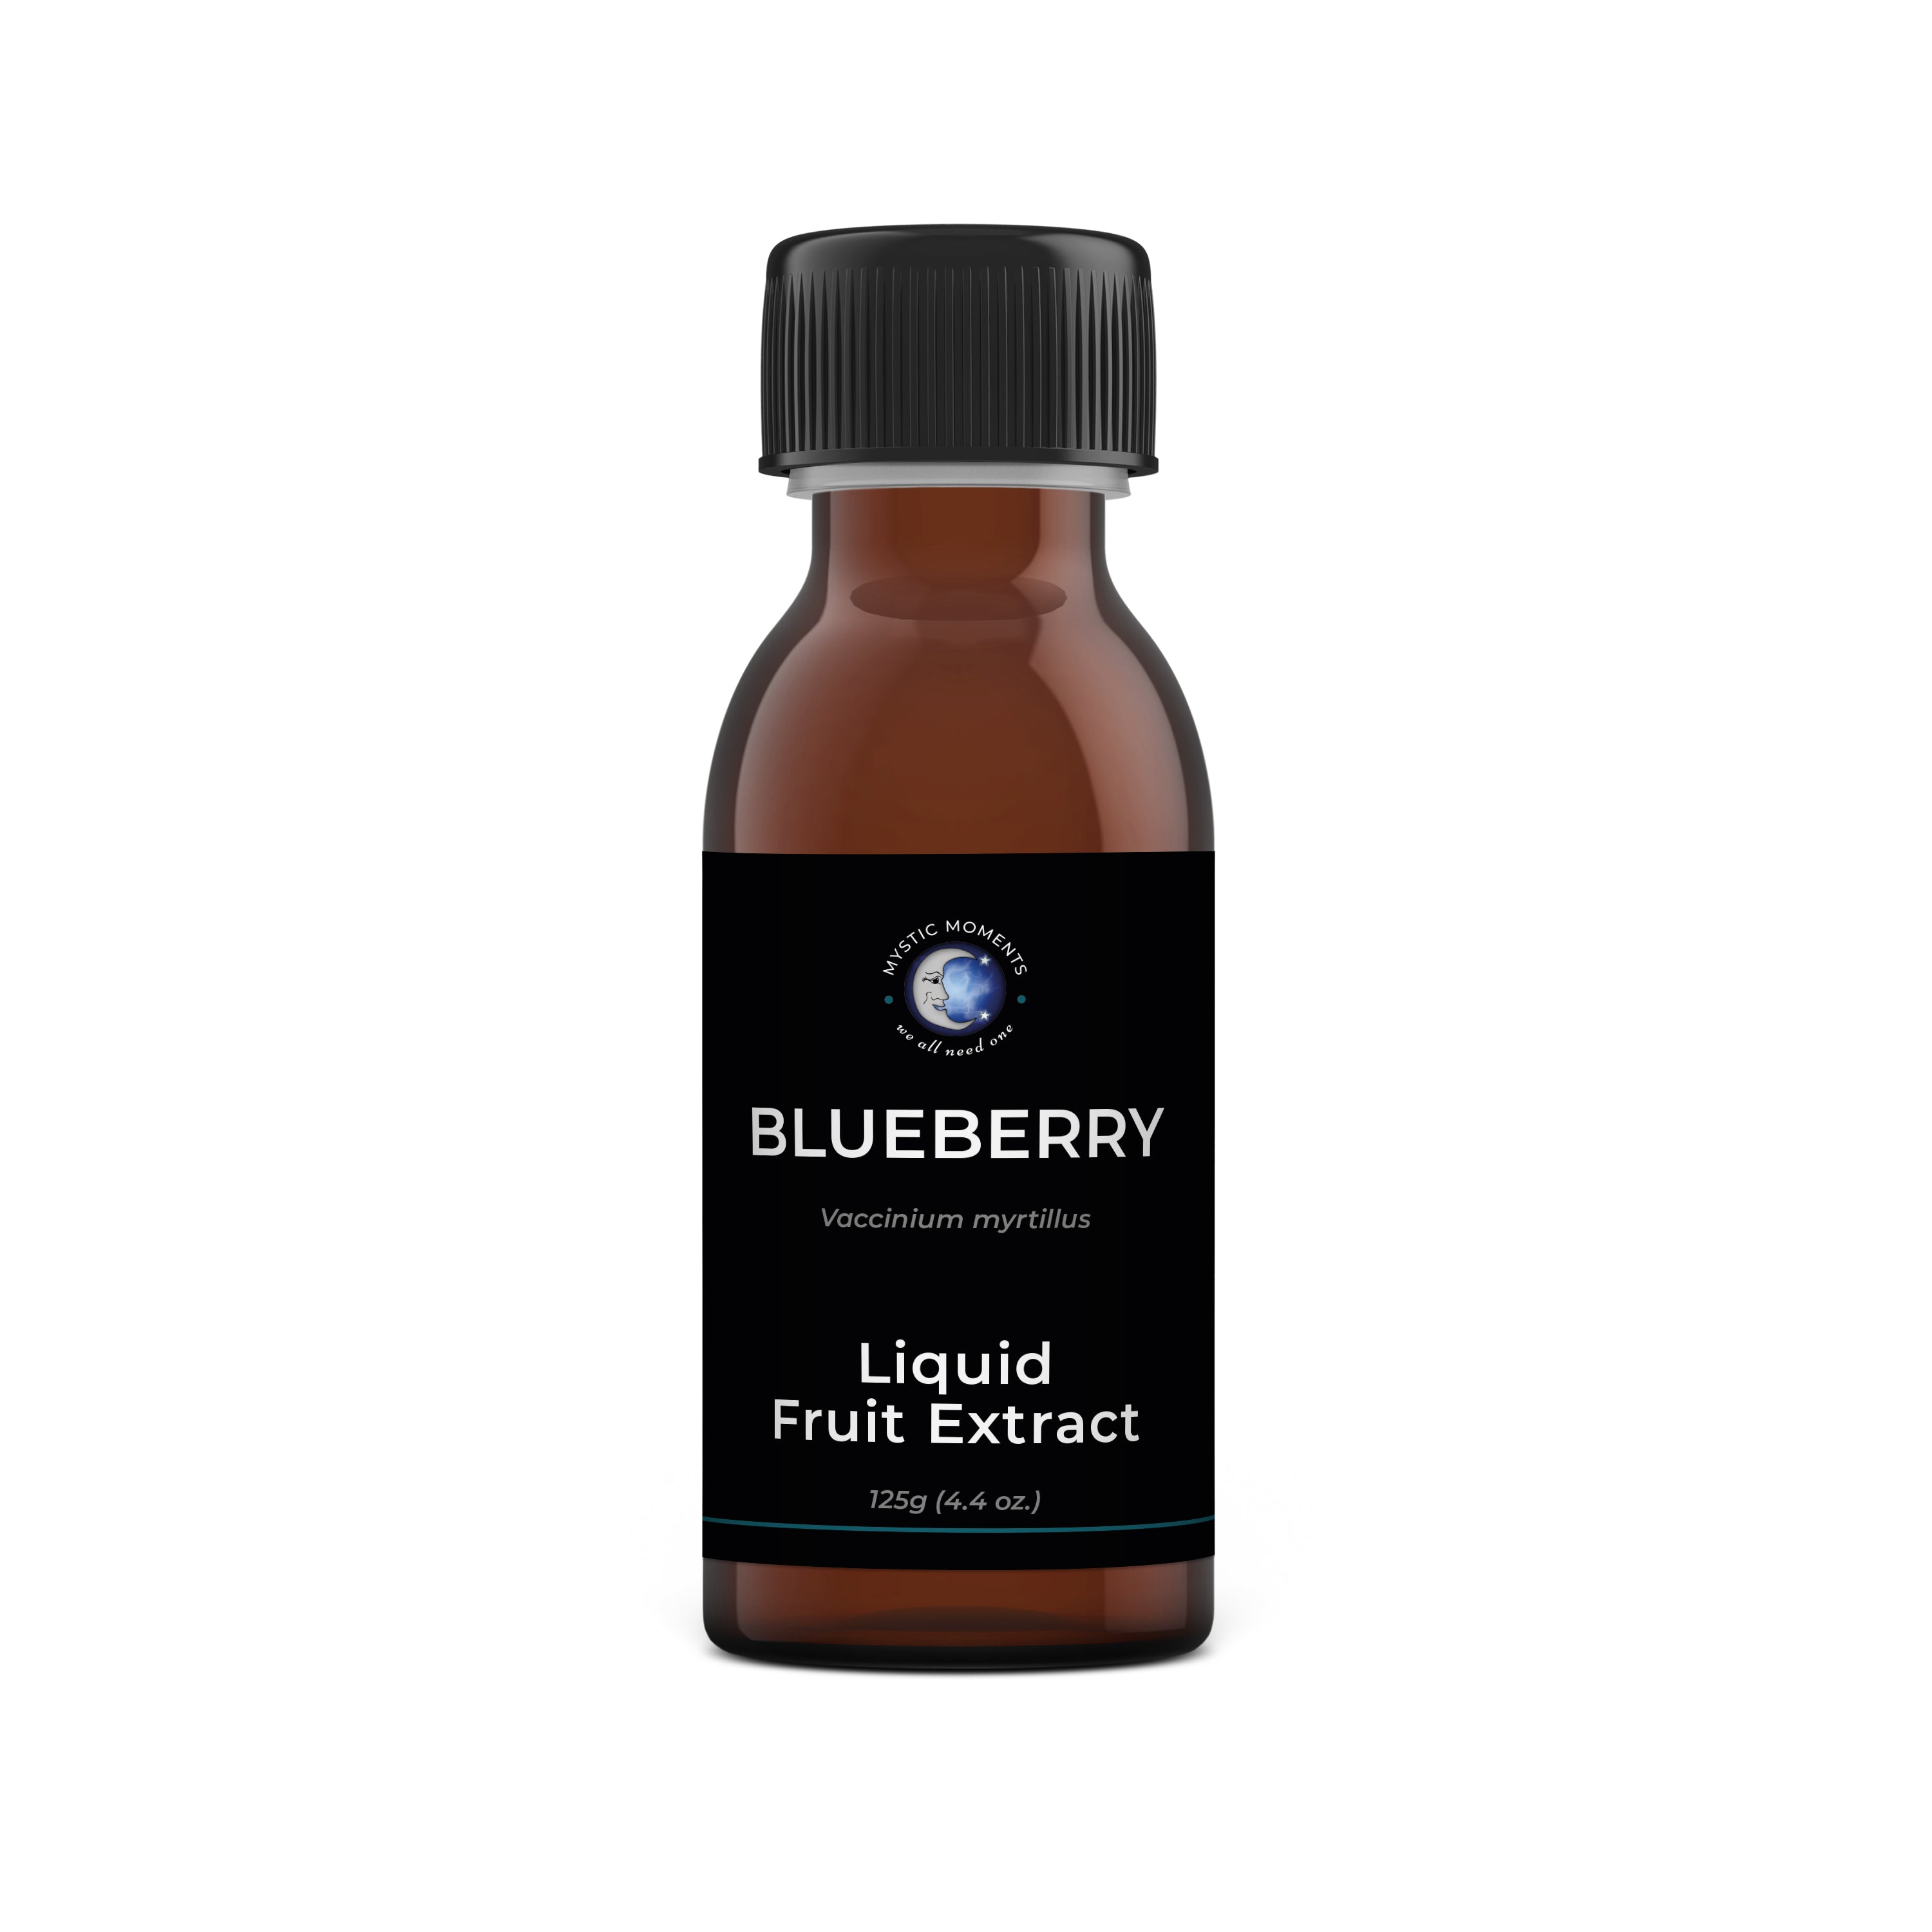 Blueberry Liquid Fruit Extract